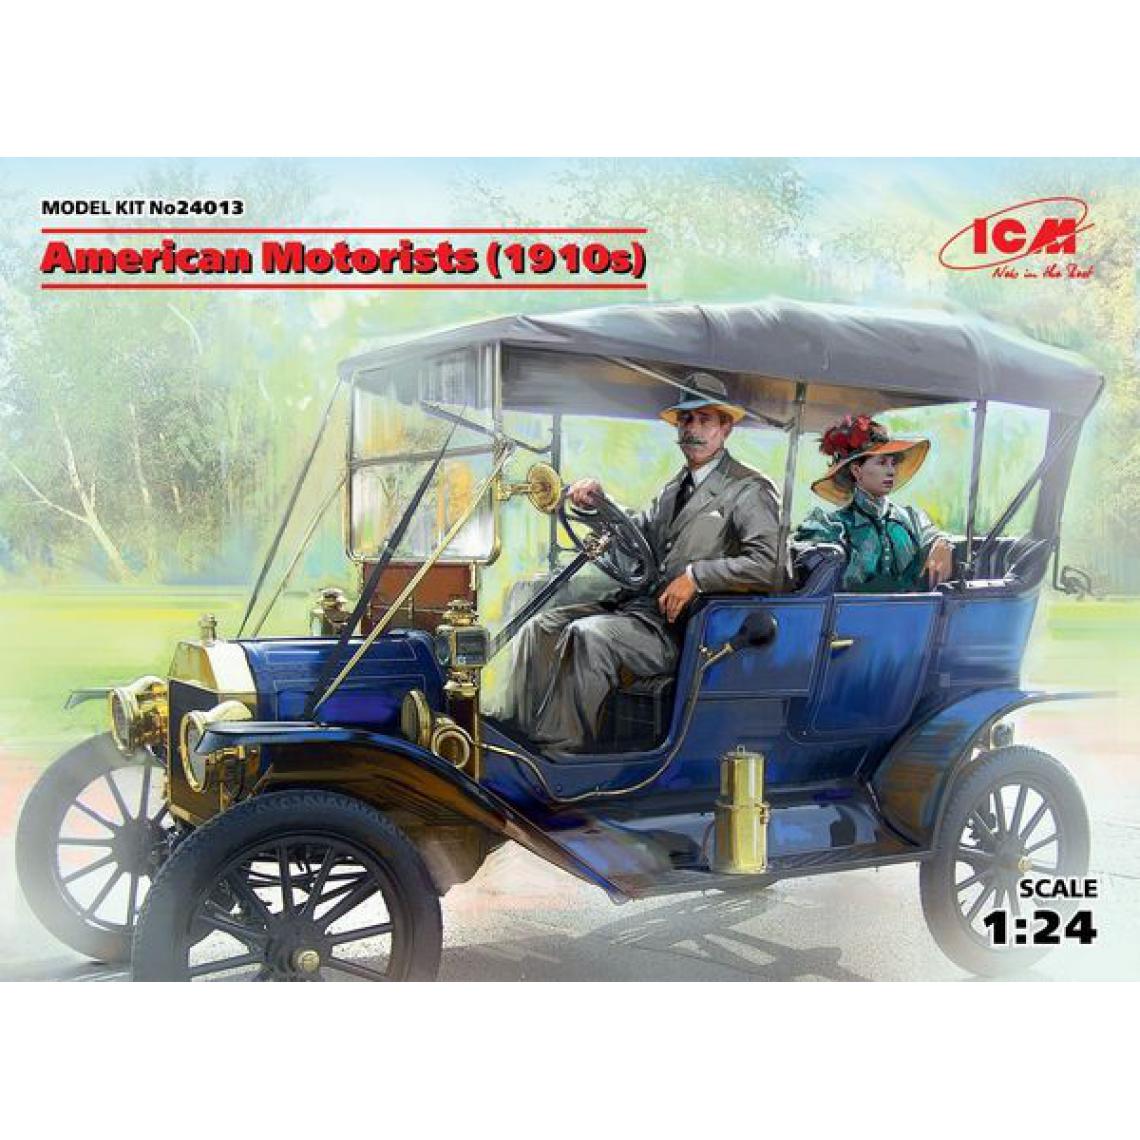 Icm - American Motorists (1910s)(1male,1female figures)- 1:24e - ICM - Accessoires et pièces